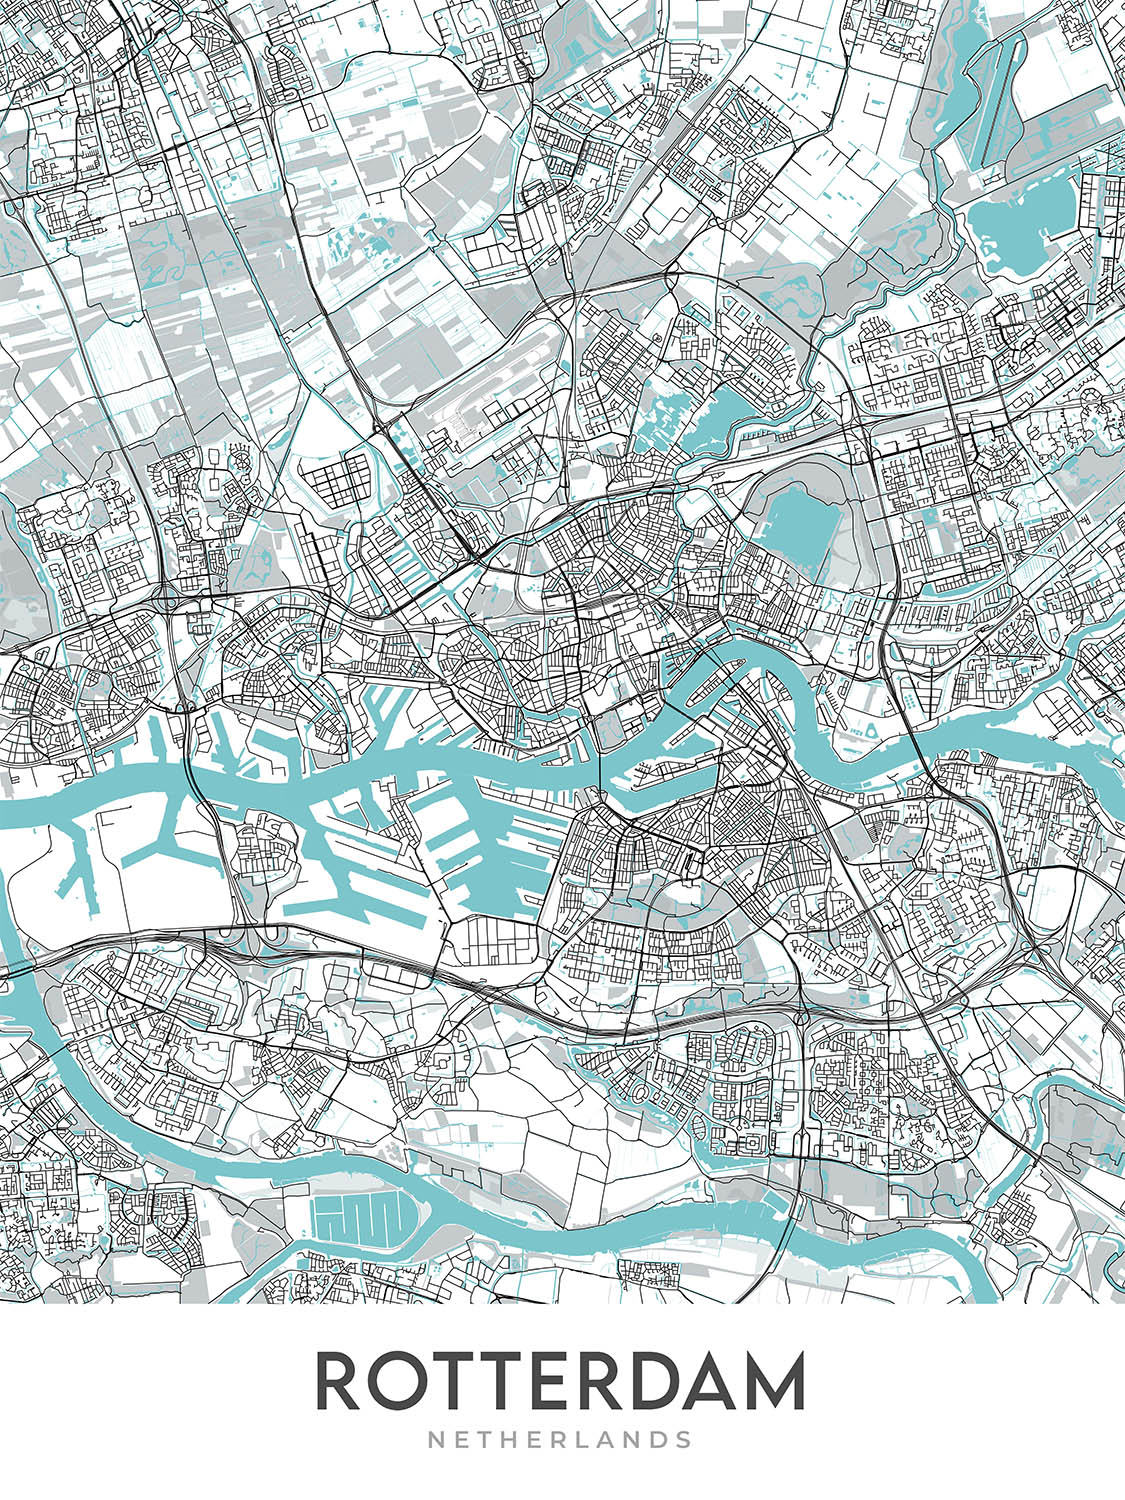 Modern City Map of Rotterdam, Netherlands: Erasmus Bridge, Euromast, De Kuip, Kunsthal, Museum Boijmans Van Beuningen